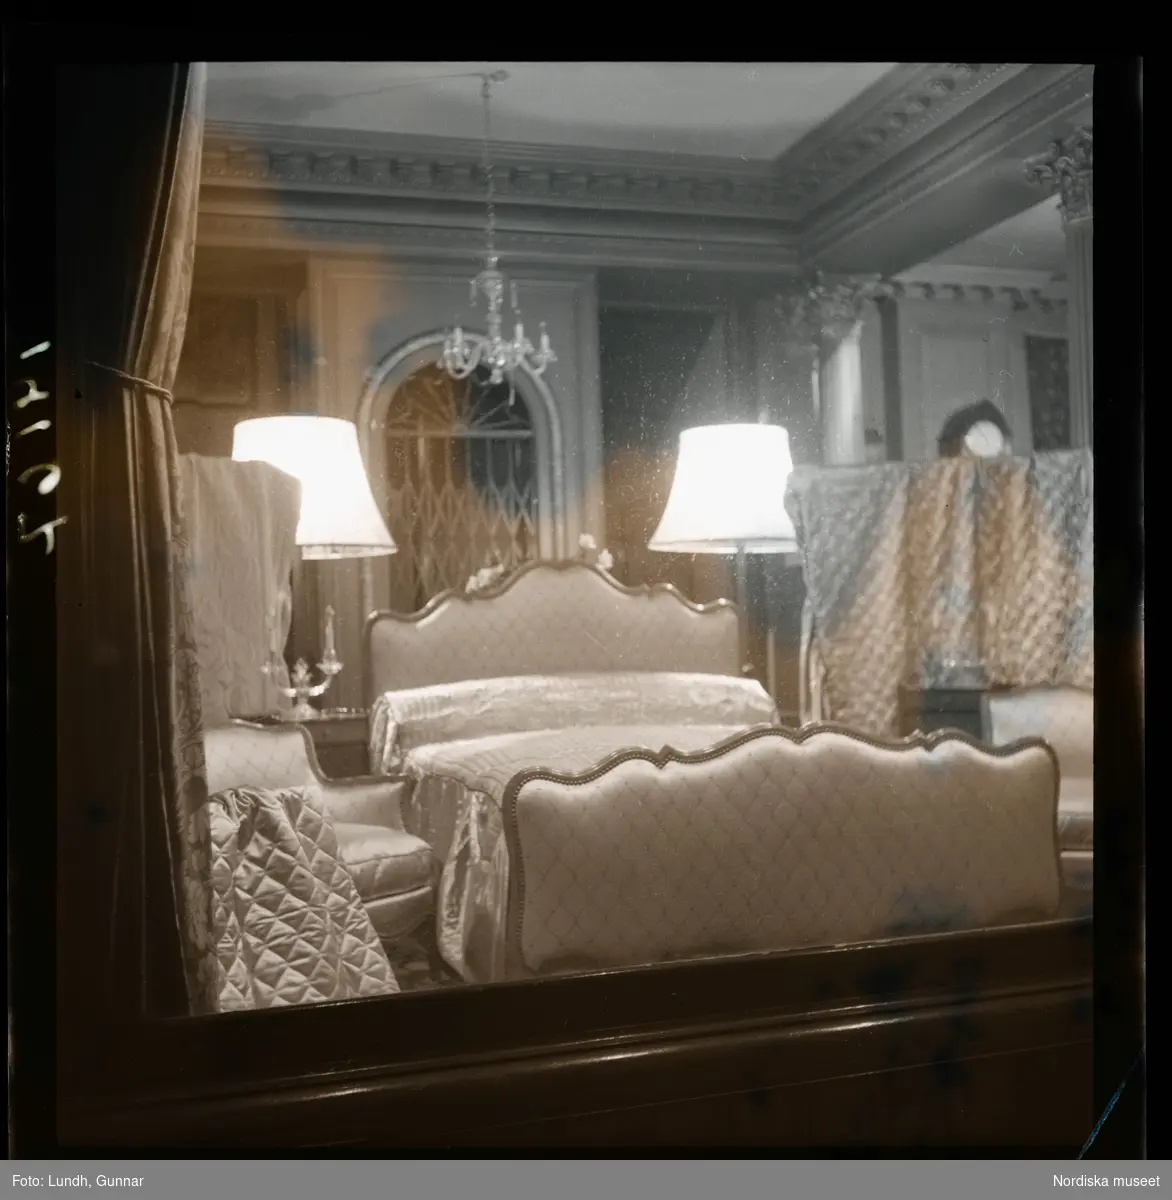 1950. Paris. Ett sovrum fotat genom ett skyltfönster